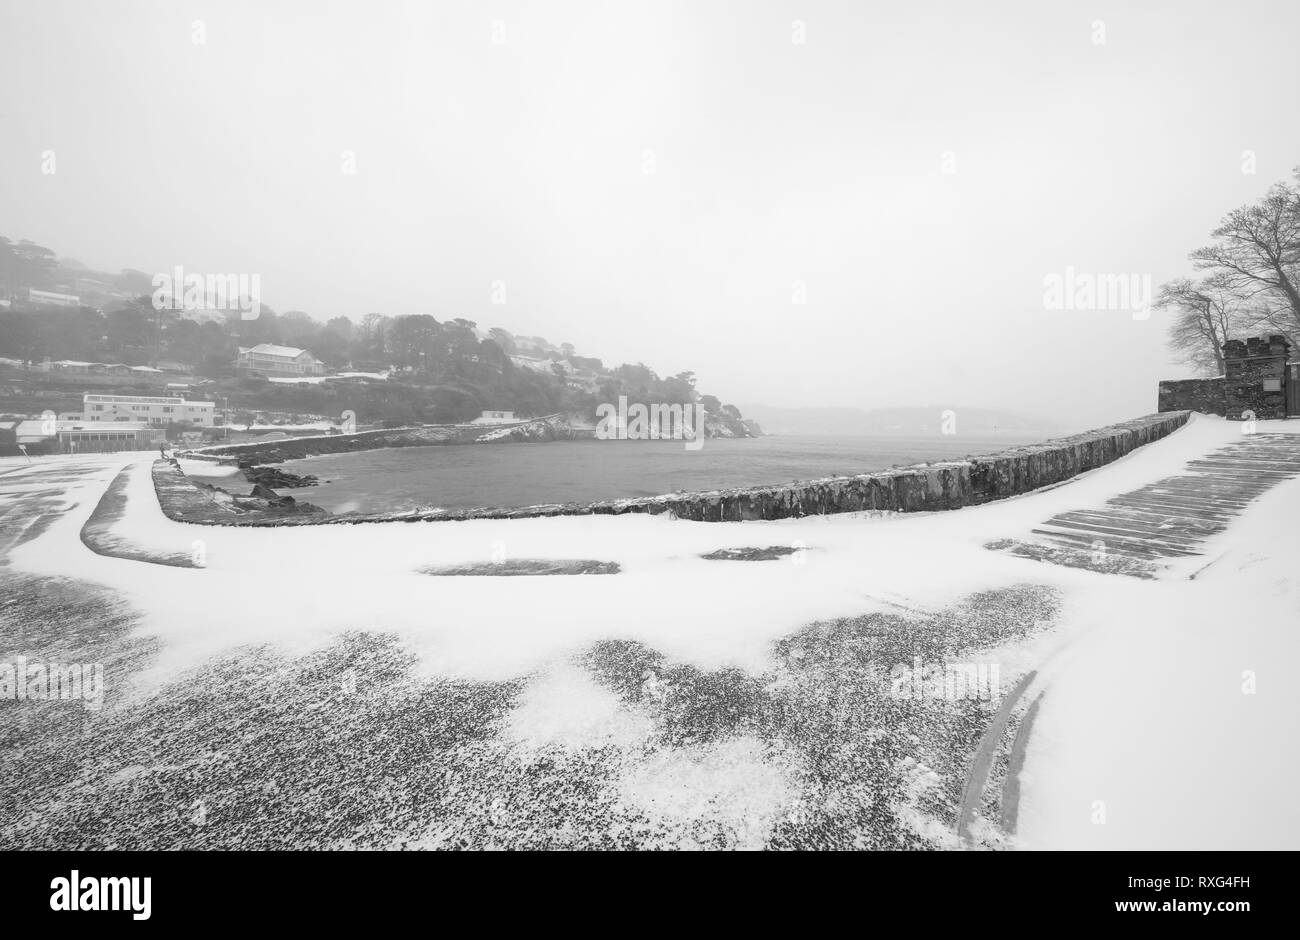 Eine verschneite Szene nach dem Tier aus dem Osten struck South Devon. North Sands wurde dann durch Sturm Emma getroffen. Stockfoto